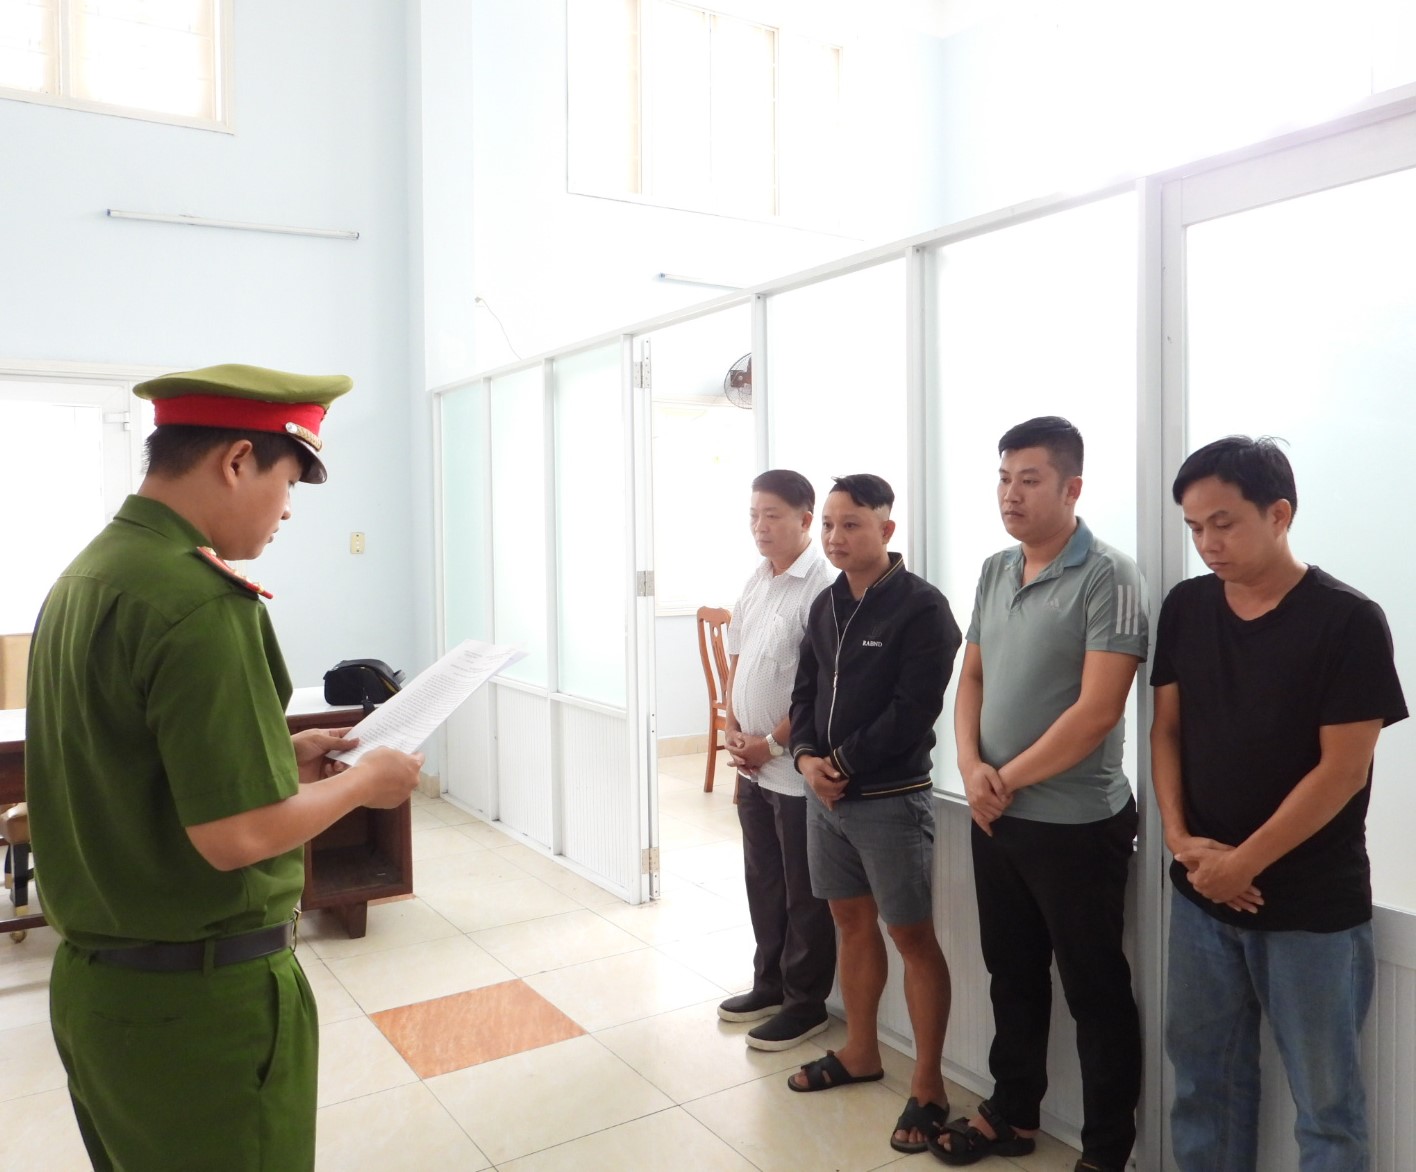 Cảnh sát vây bắt 4 đối tượng trong đường dây cá độ quy mô lớn ở Đà Nẵng